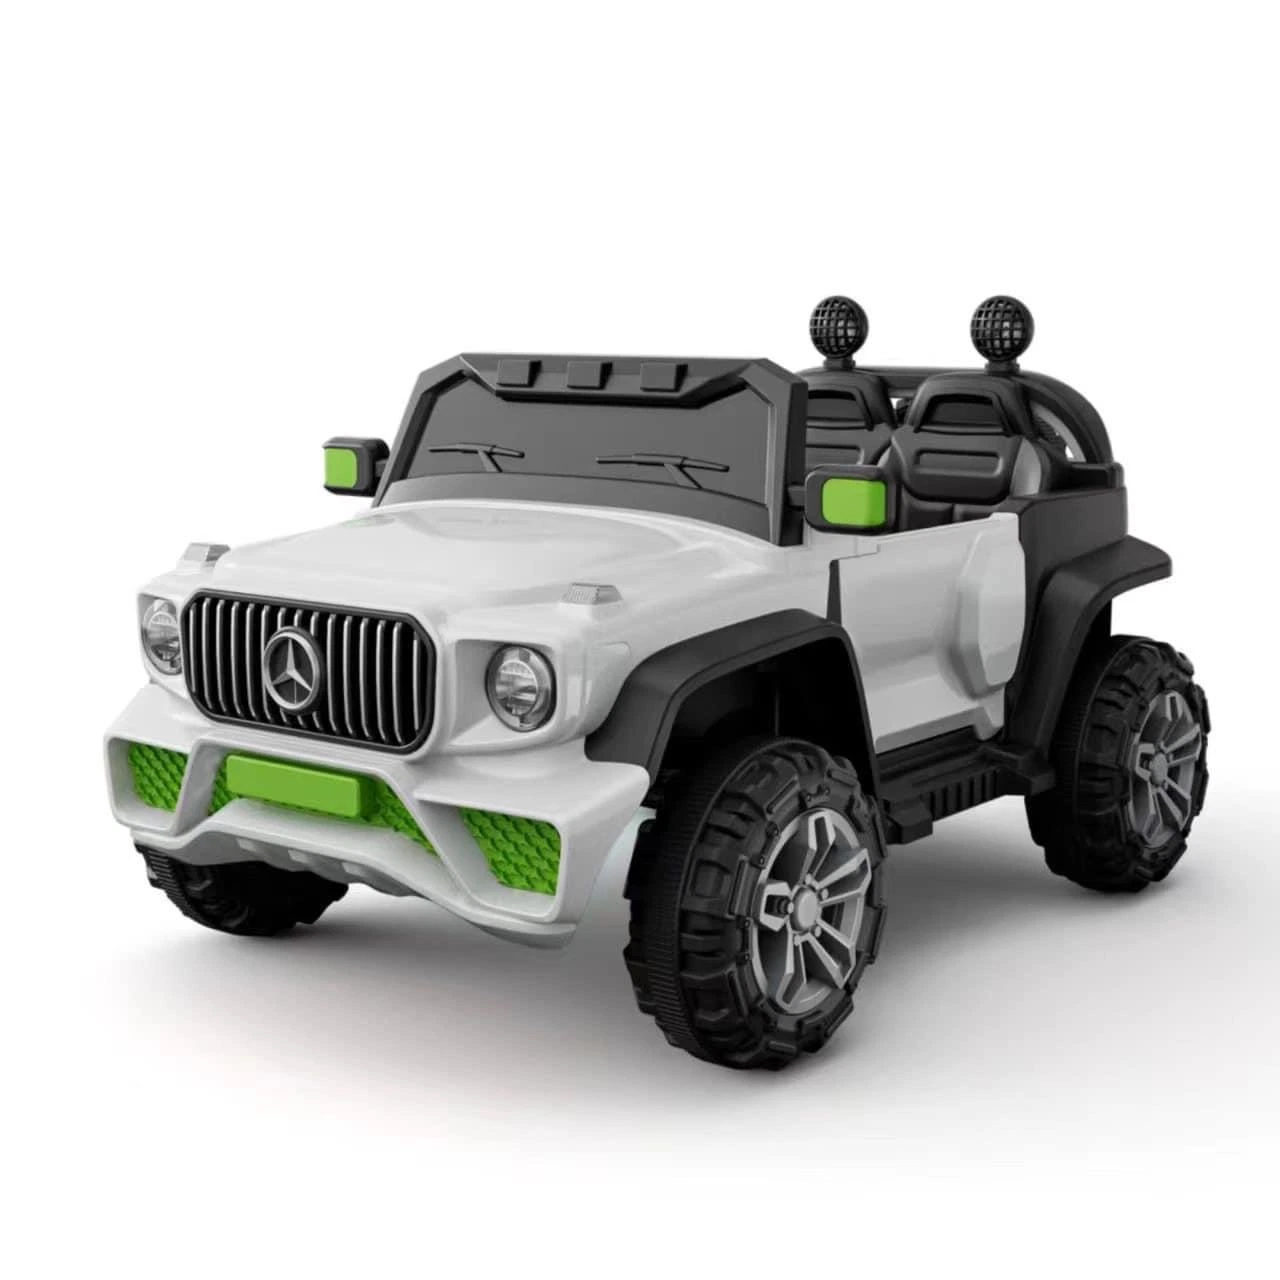 Atacado China Electric Toy Cars for Children, a bateria funciona Ride ons, carro Jeep recarregável